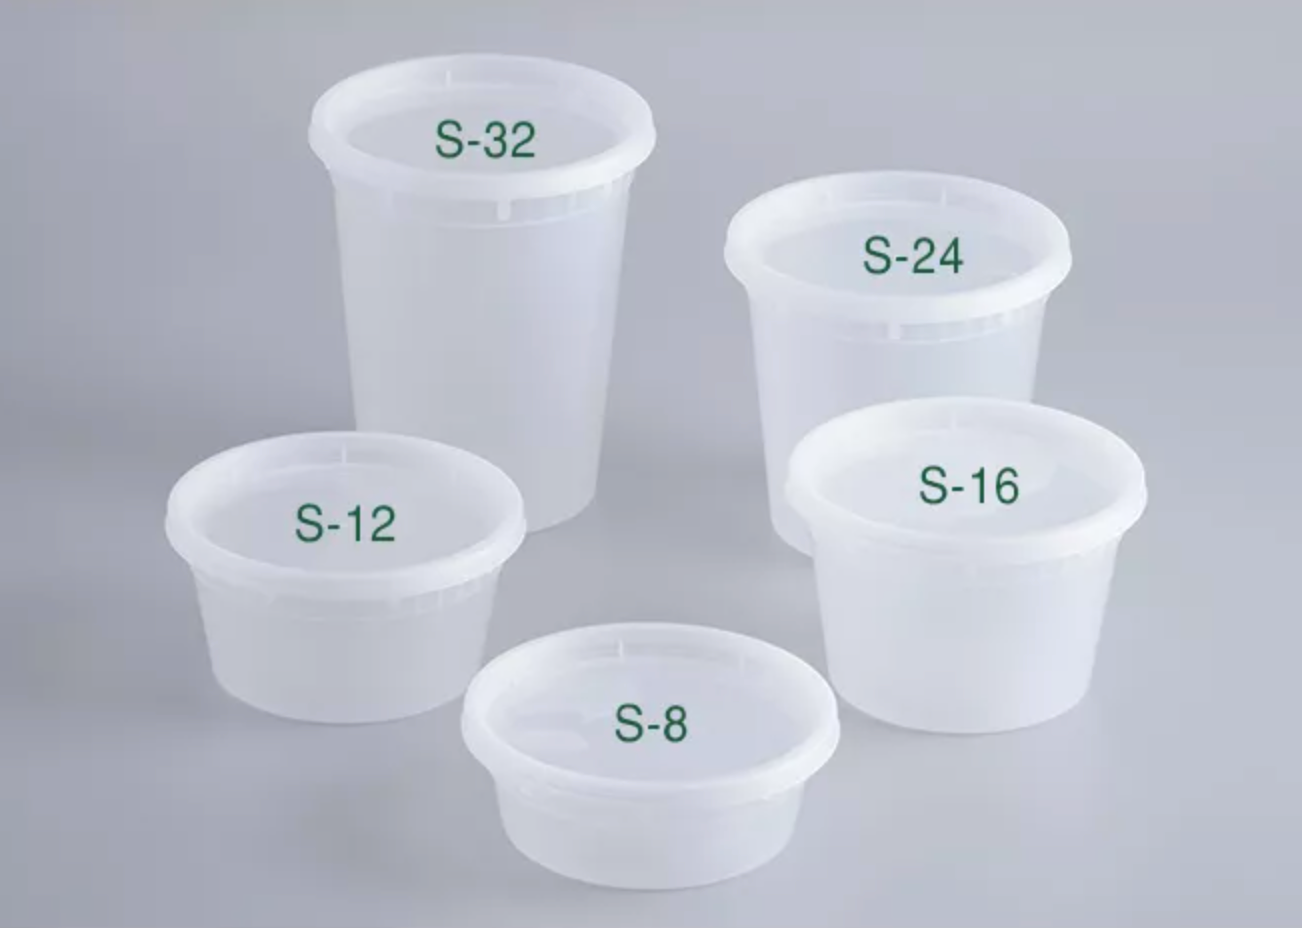 32 oz. Microwaveable Translucent Plastic Soup Container 240 Sets